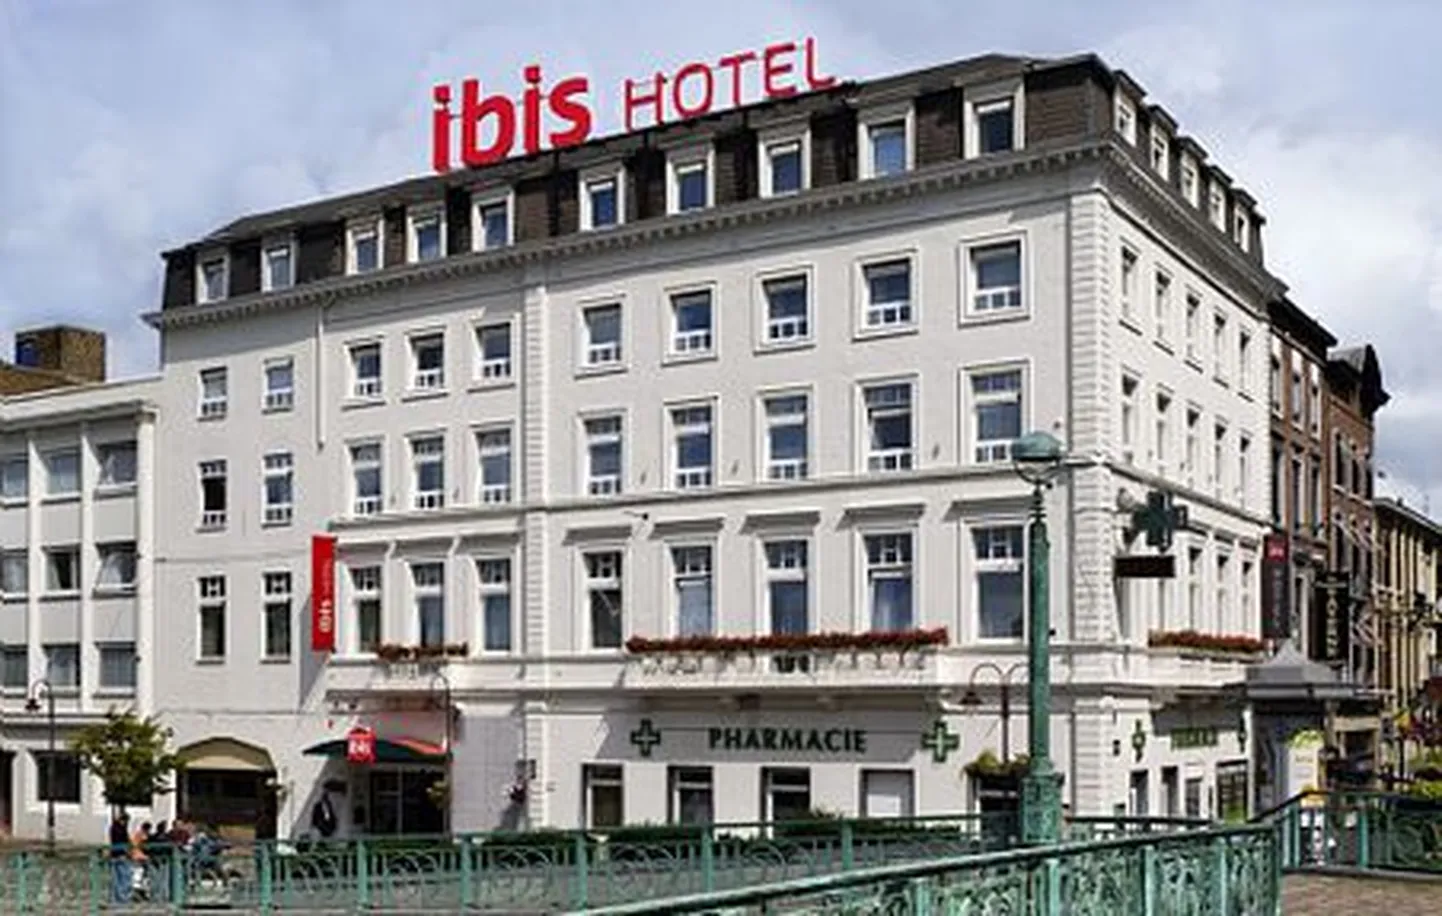 Accori kõige levinum bränd on ibis, mille alla kuulub üle maailma 979 hotelli.